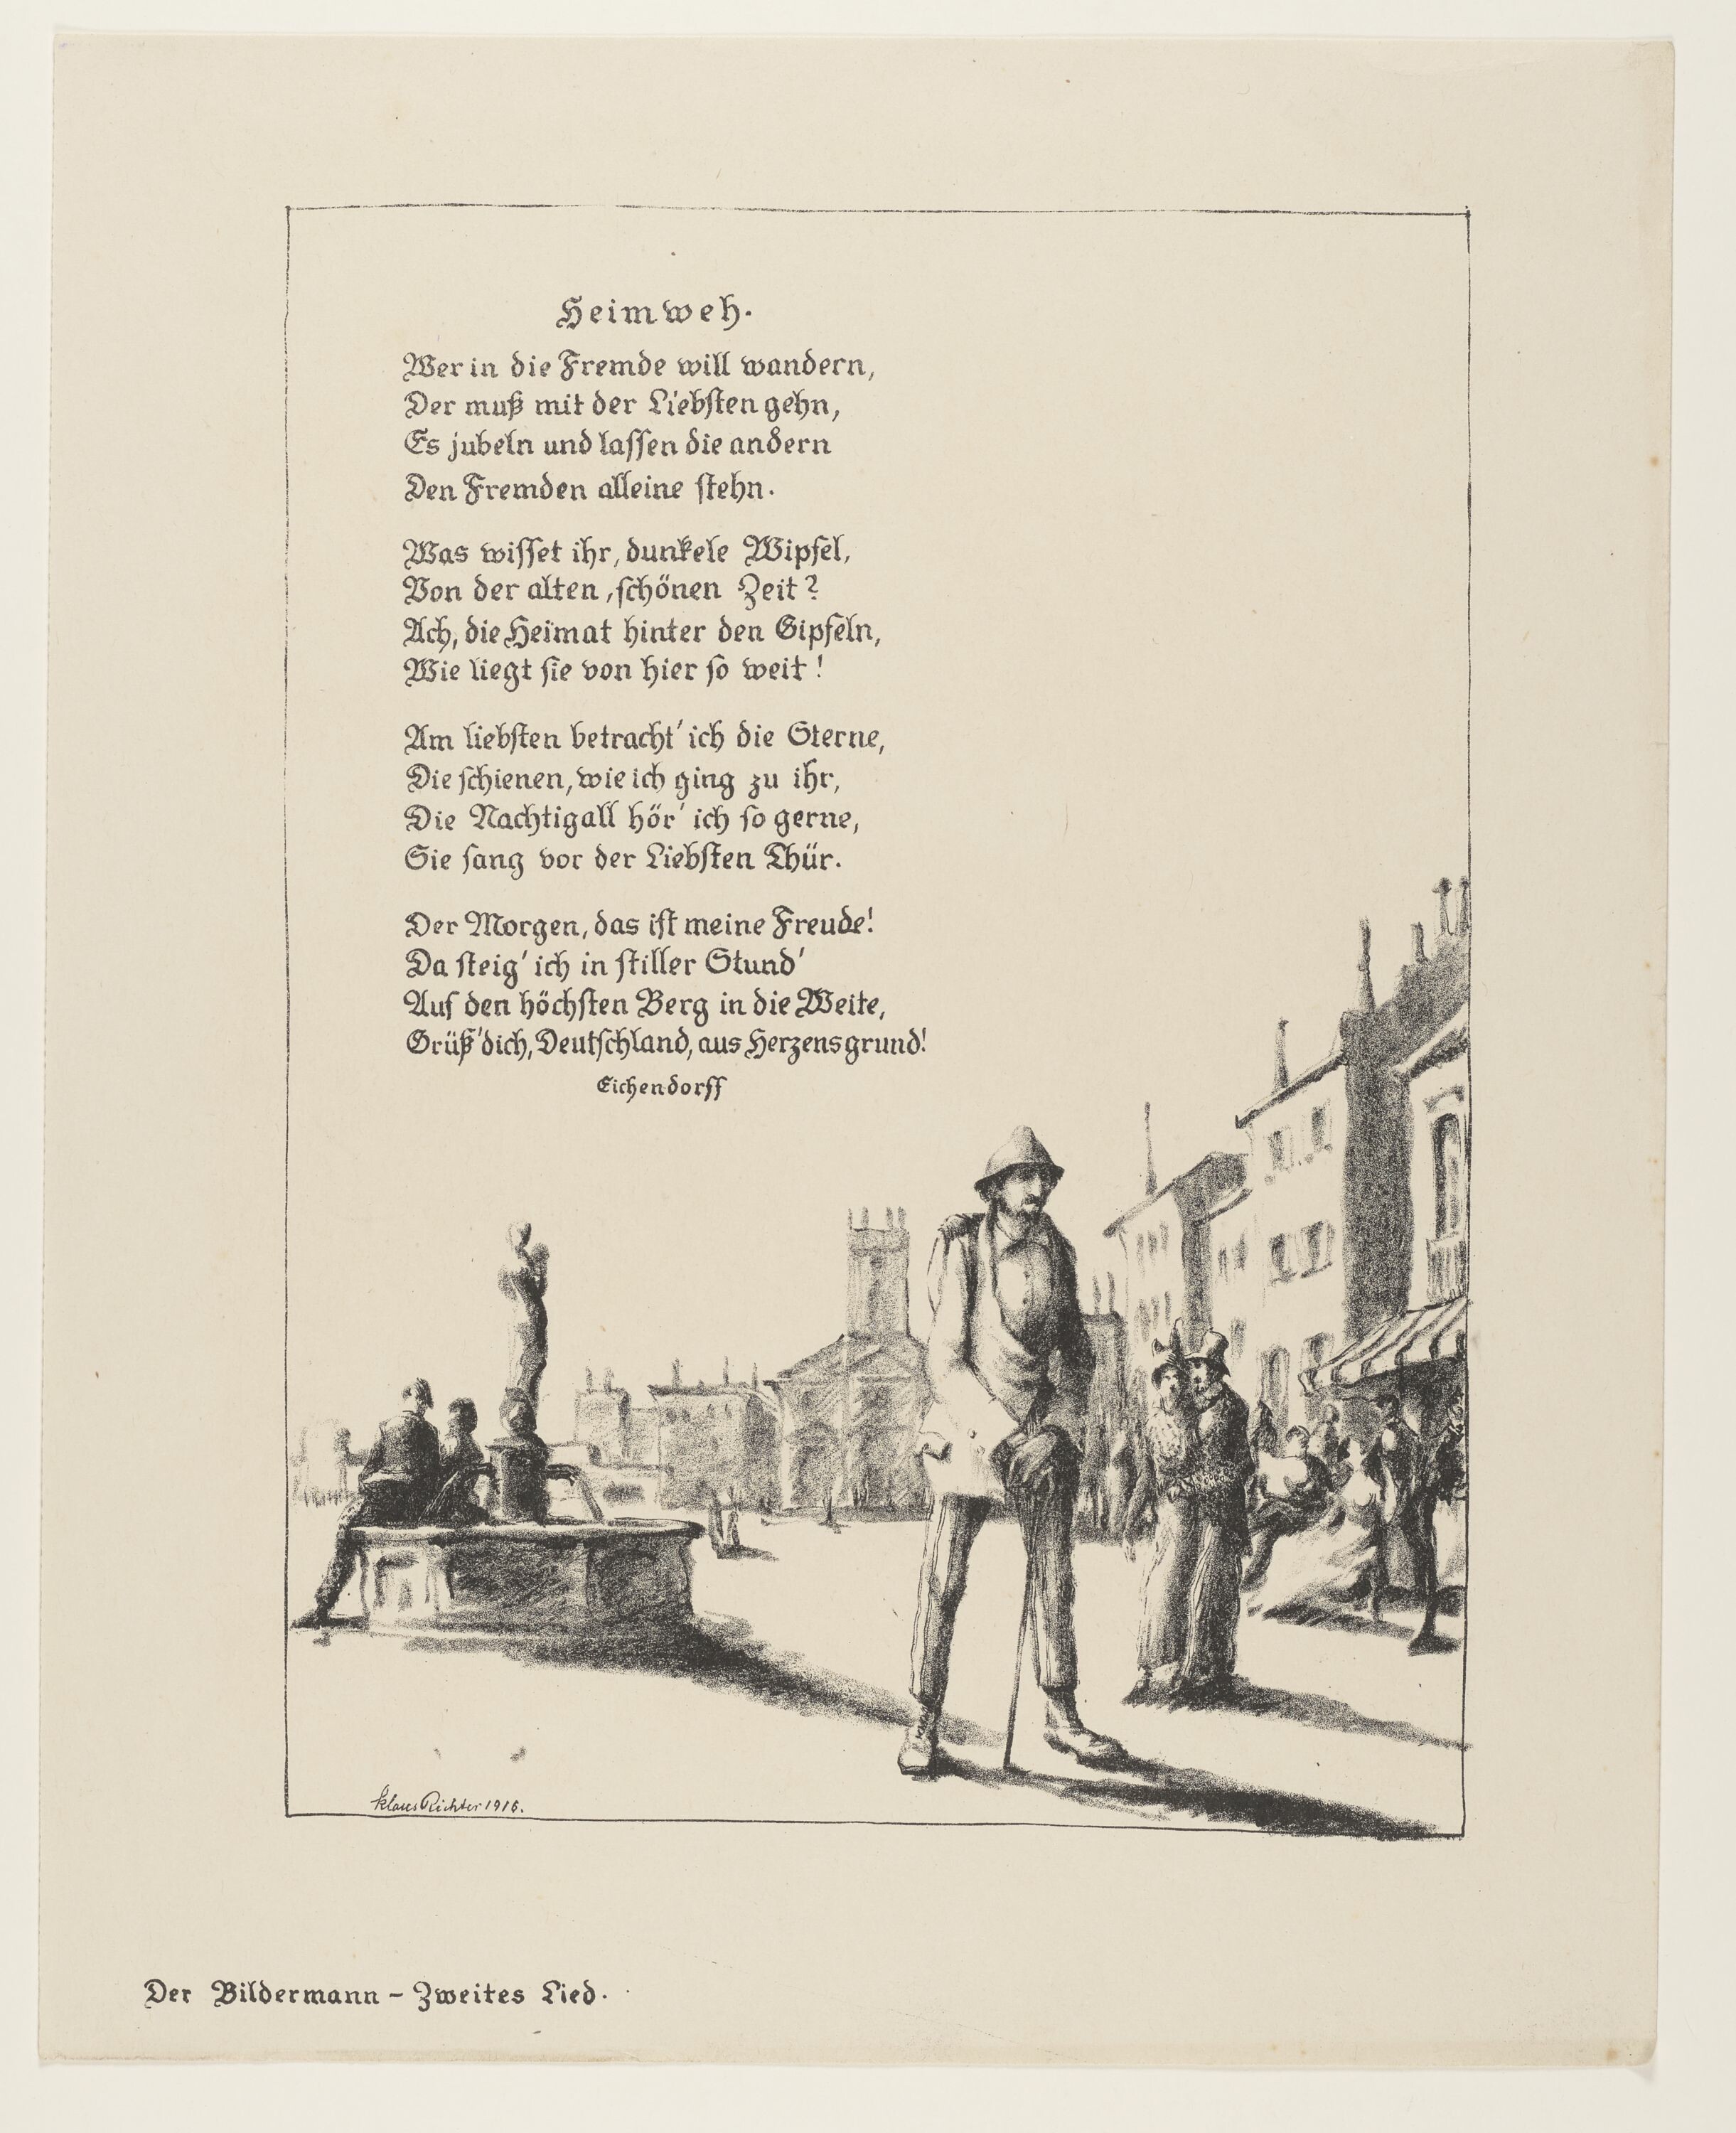 Illustration zum Gedicht Heimweh von Eichendorff, aus: Der Bildermann, Nr. 3, Mai 1916 (© VG Bild-Kunst, Bonn 2021 RR-F)